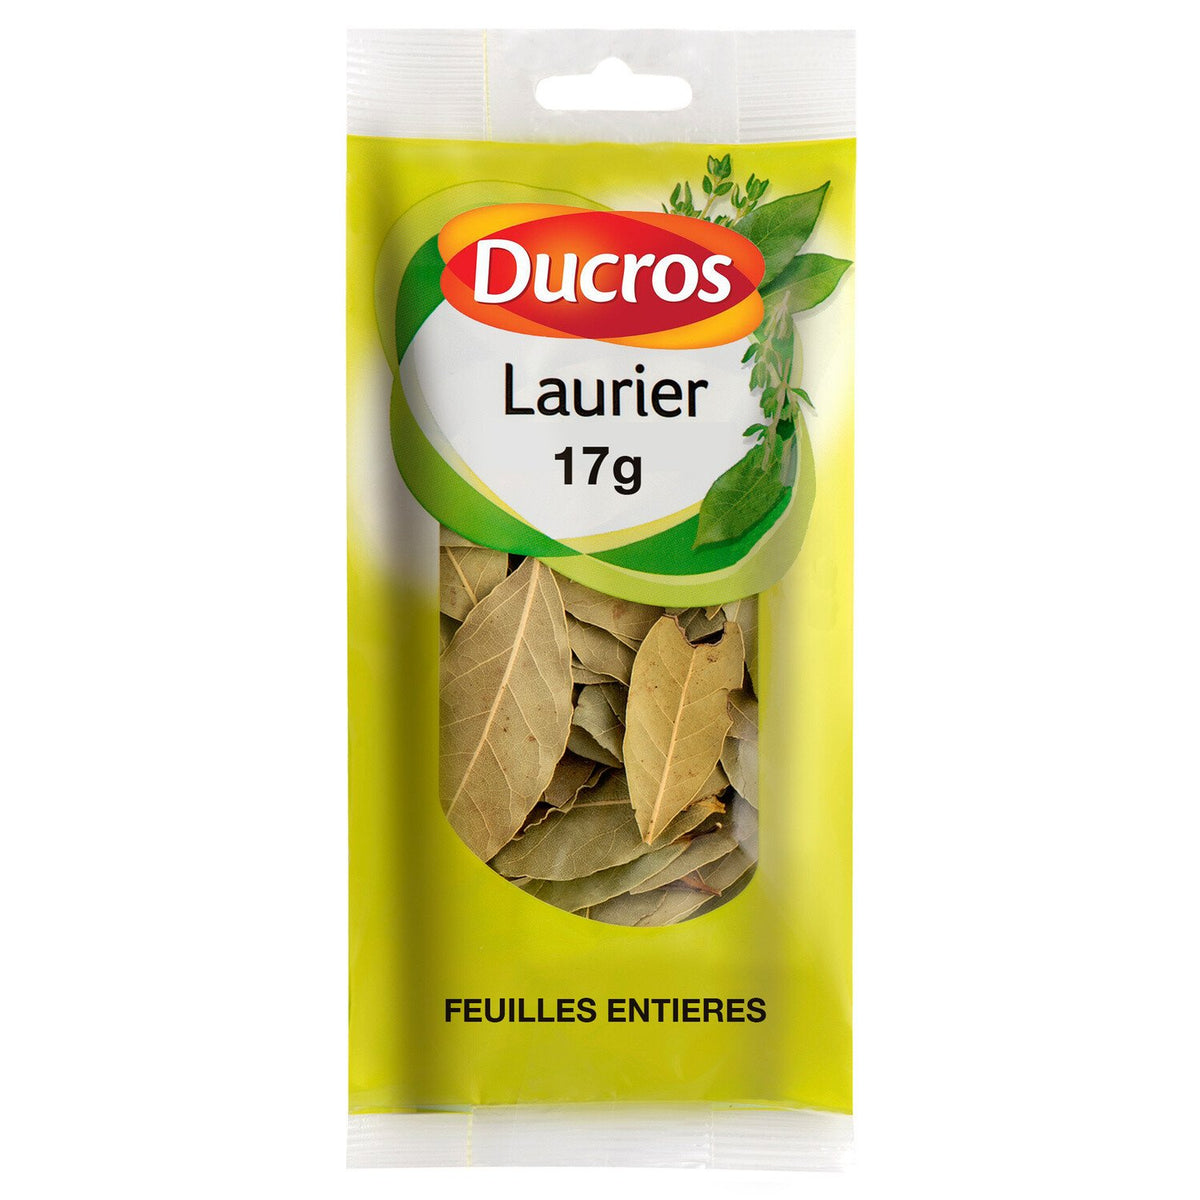 DUCROS Laurier feuilles entières 17g -G61